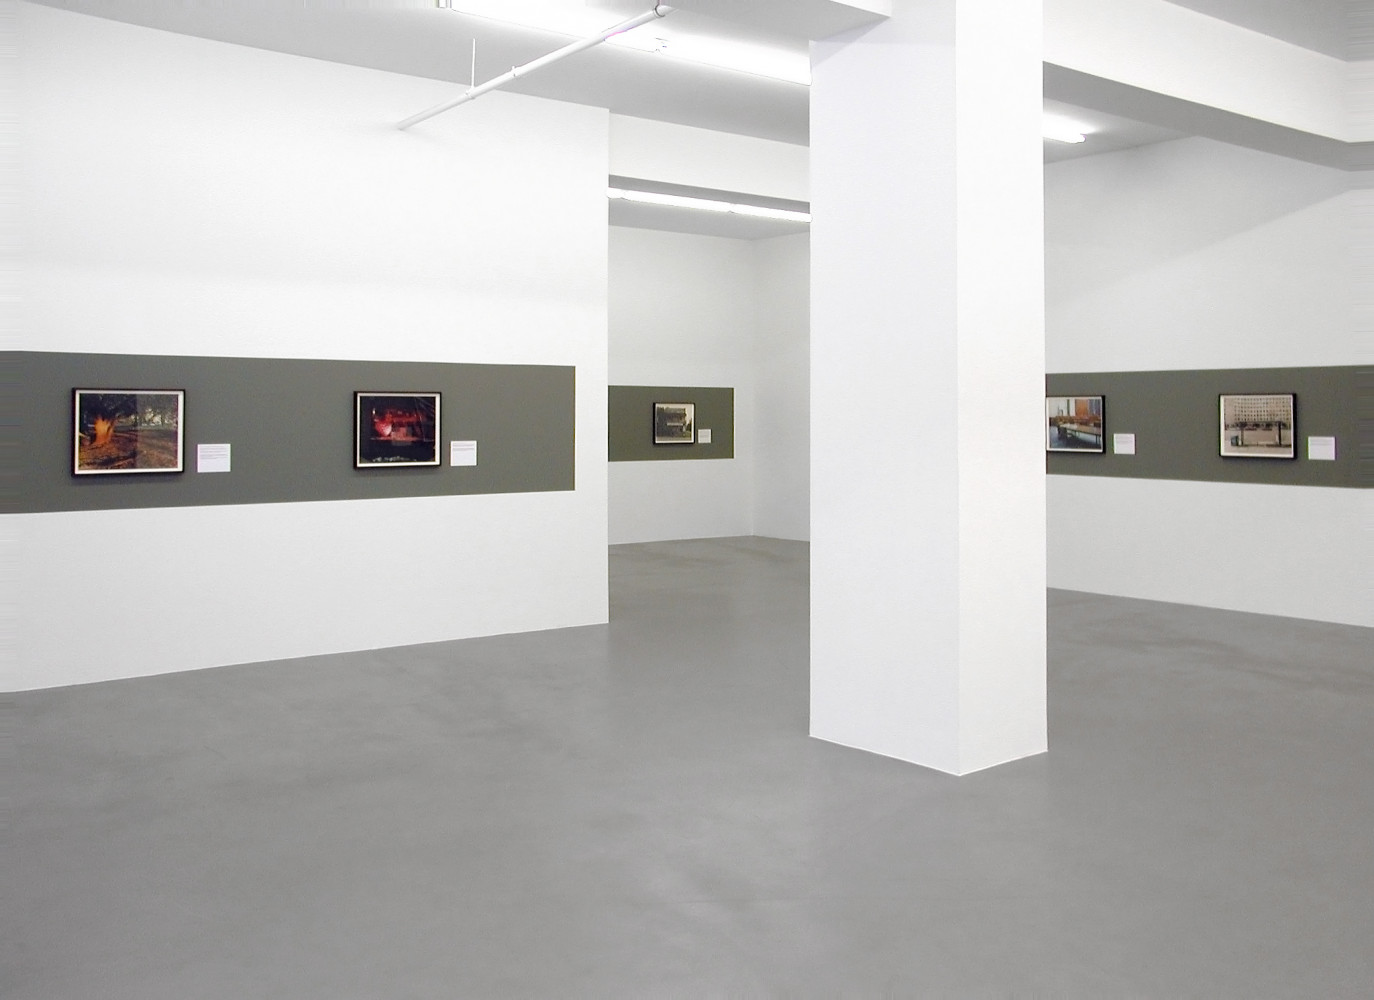 Joel Sternfeld, ‘On This Site’, Installationsansicht, Buchmann Galerie, 2009